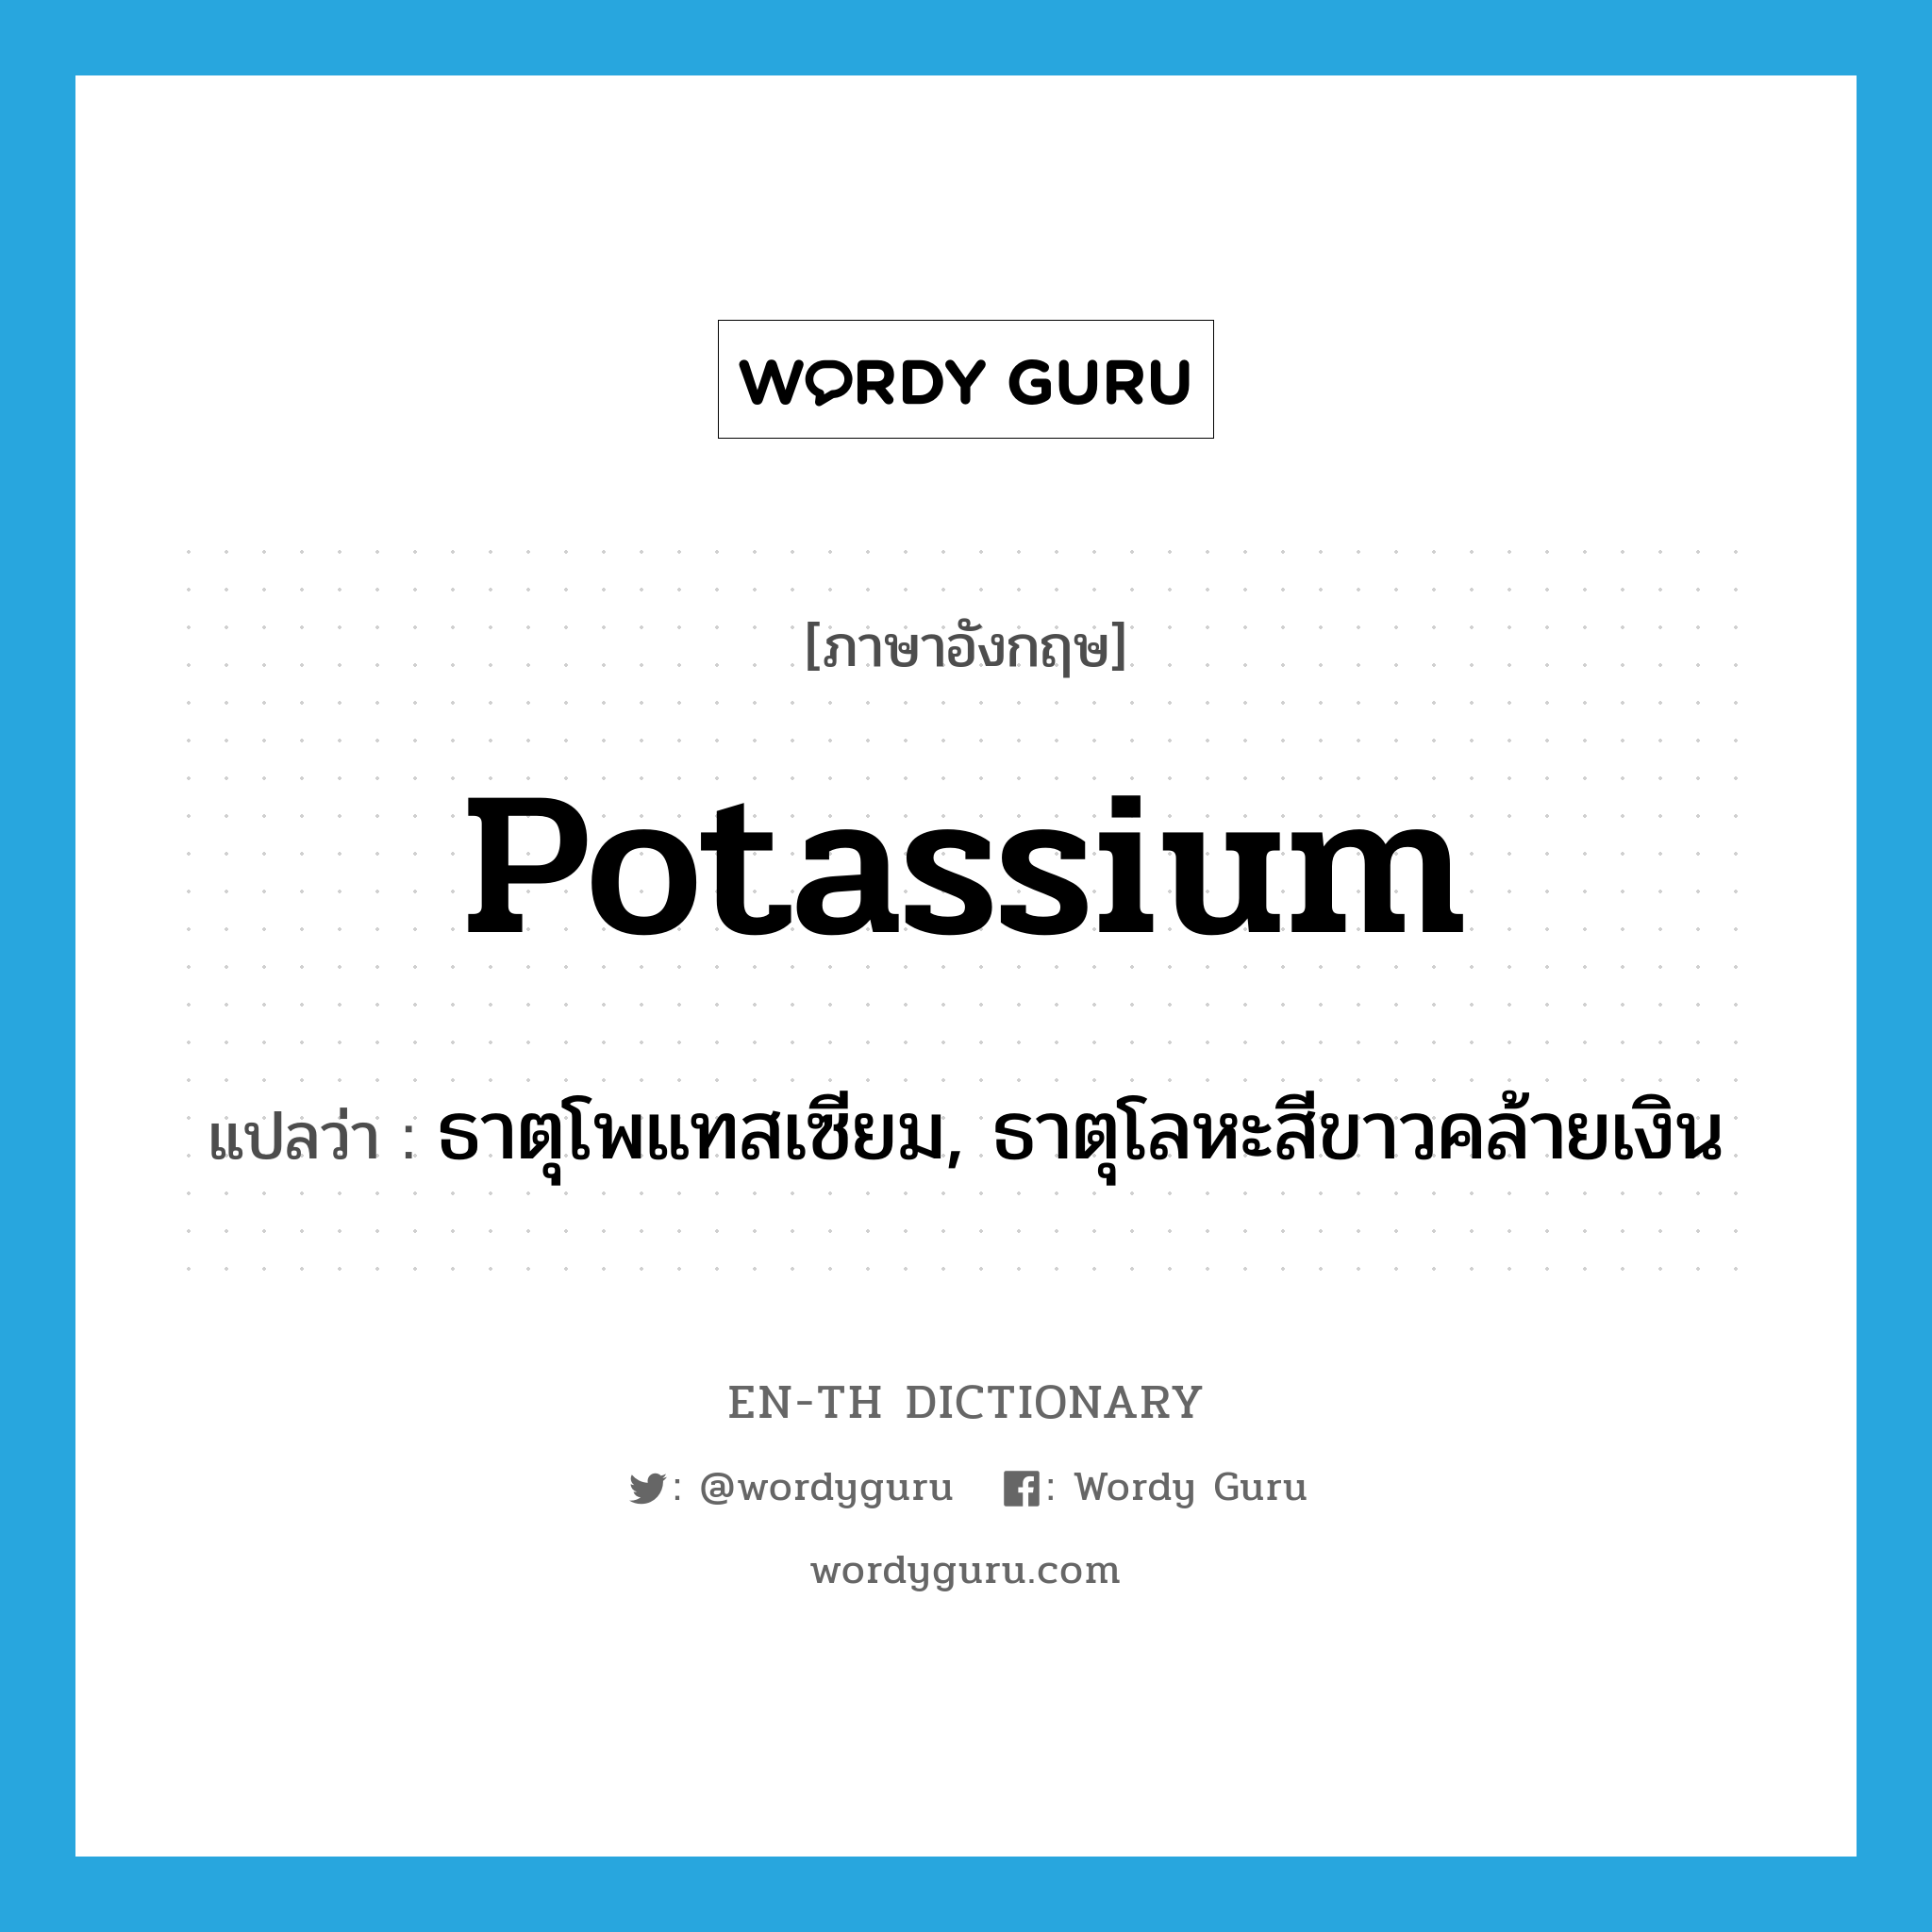 potassium แปลว่า?, คำศัพท์ภาษาอังกฤษ potassium แปลว่า ธาตุโพแทสเซียม, ธาตุโลหะสีขาวคล้ายเงิน ประเภท N หมวด N